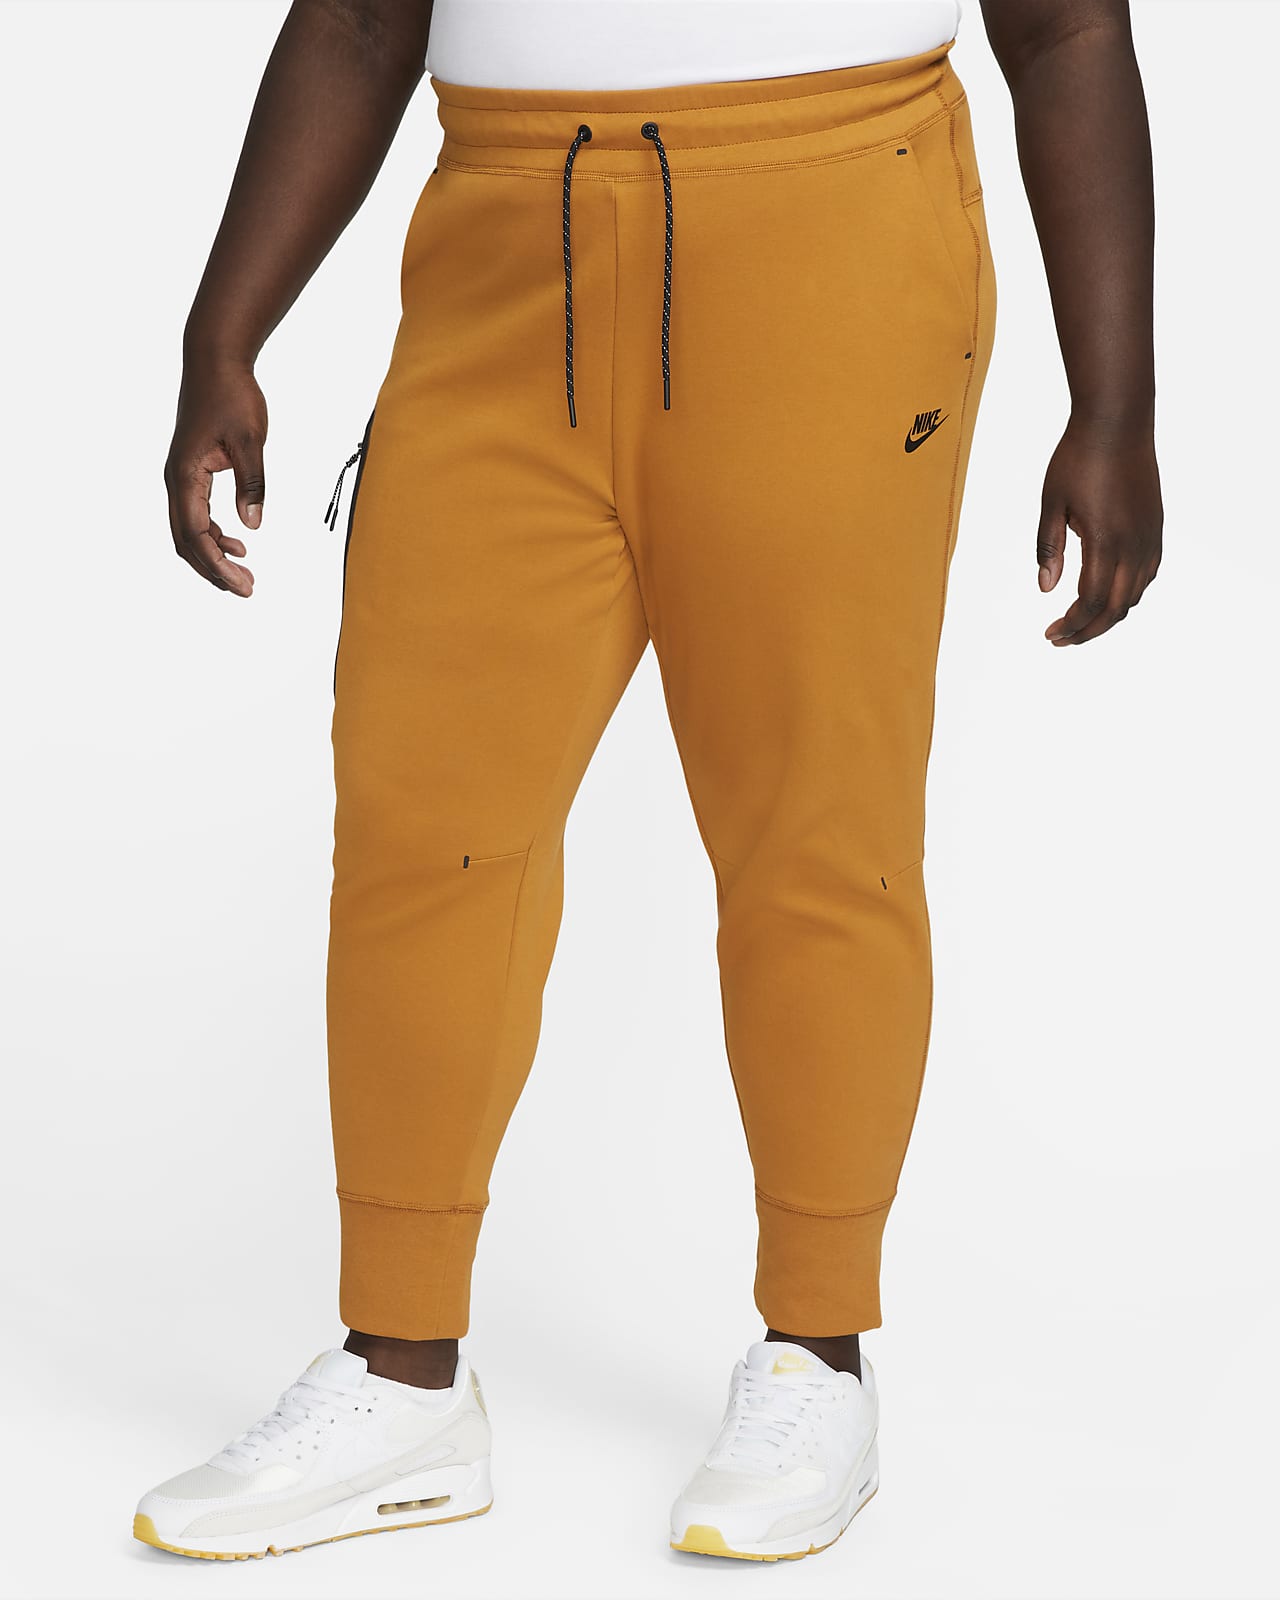 Bakkerij soep Hoop van Nike Sportswear Tech Fleece Women's Pants (Plus Size). Nike.com